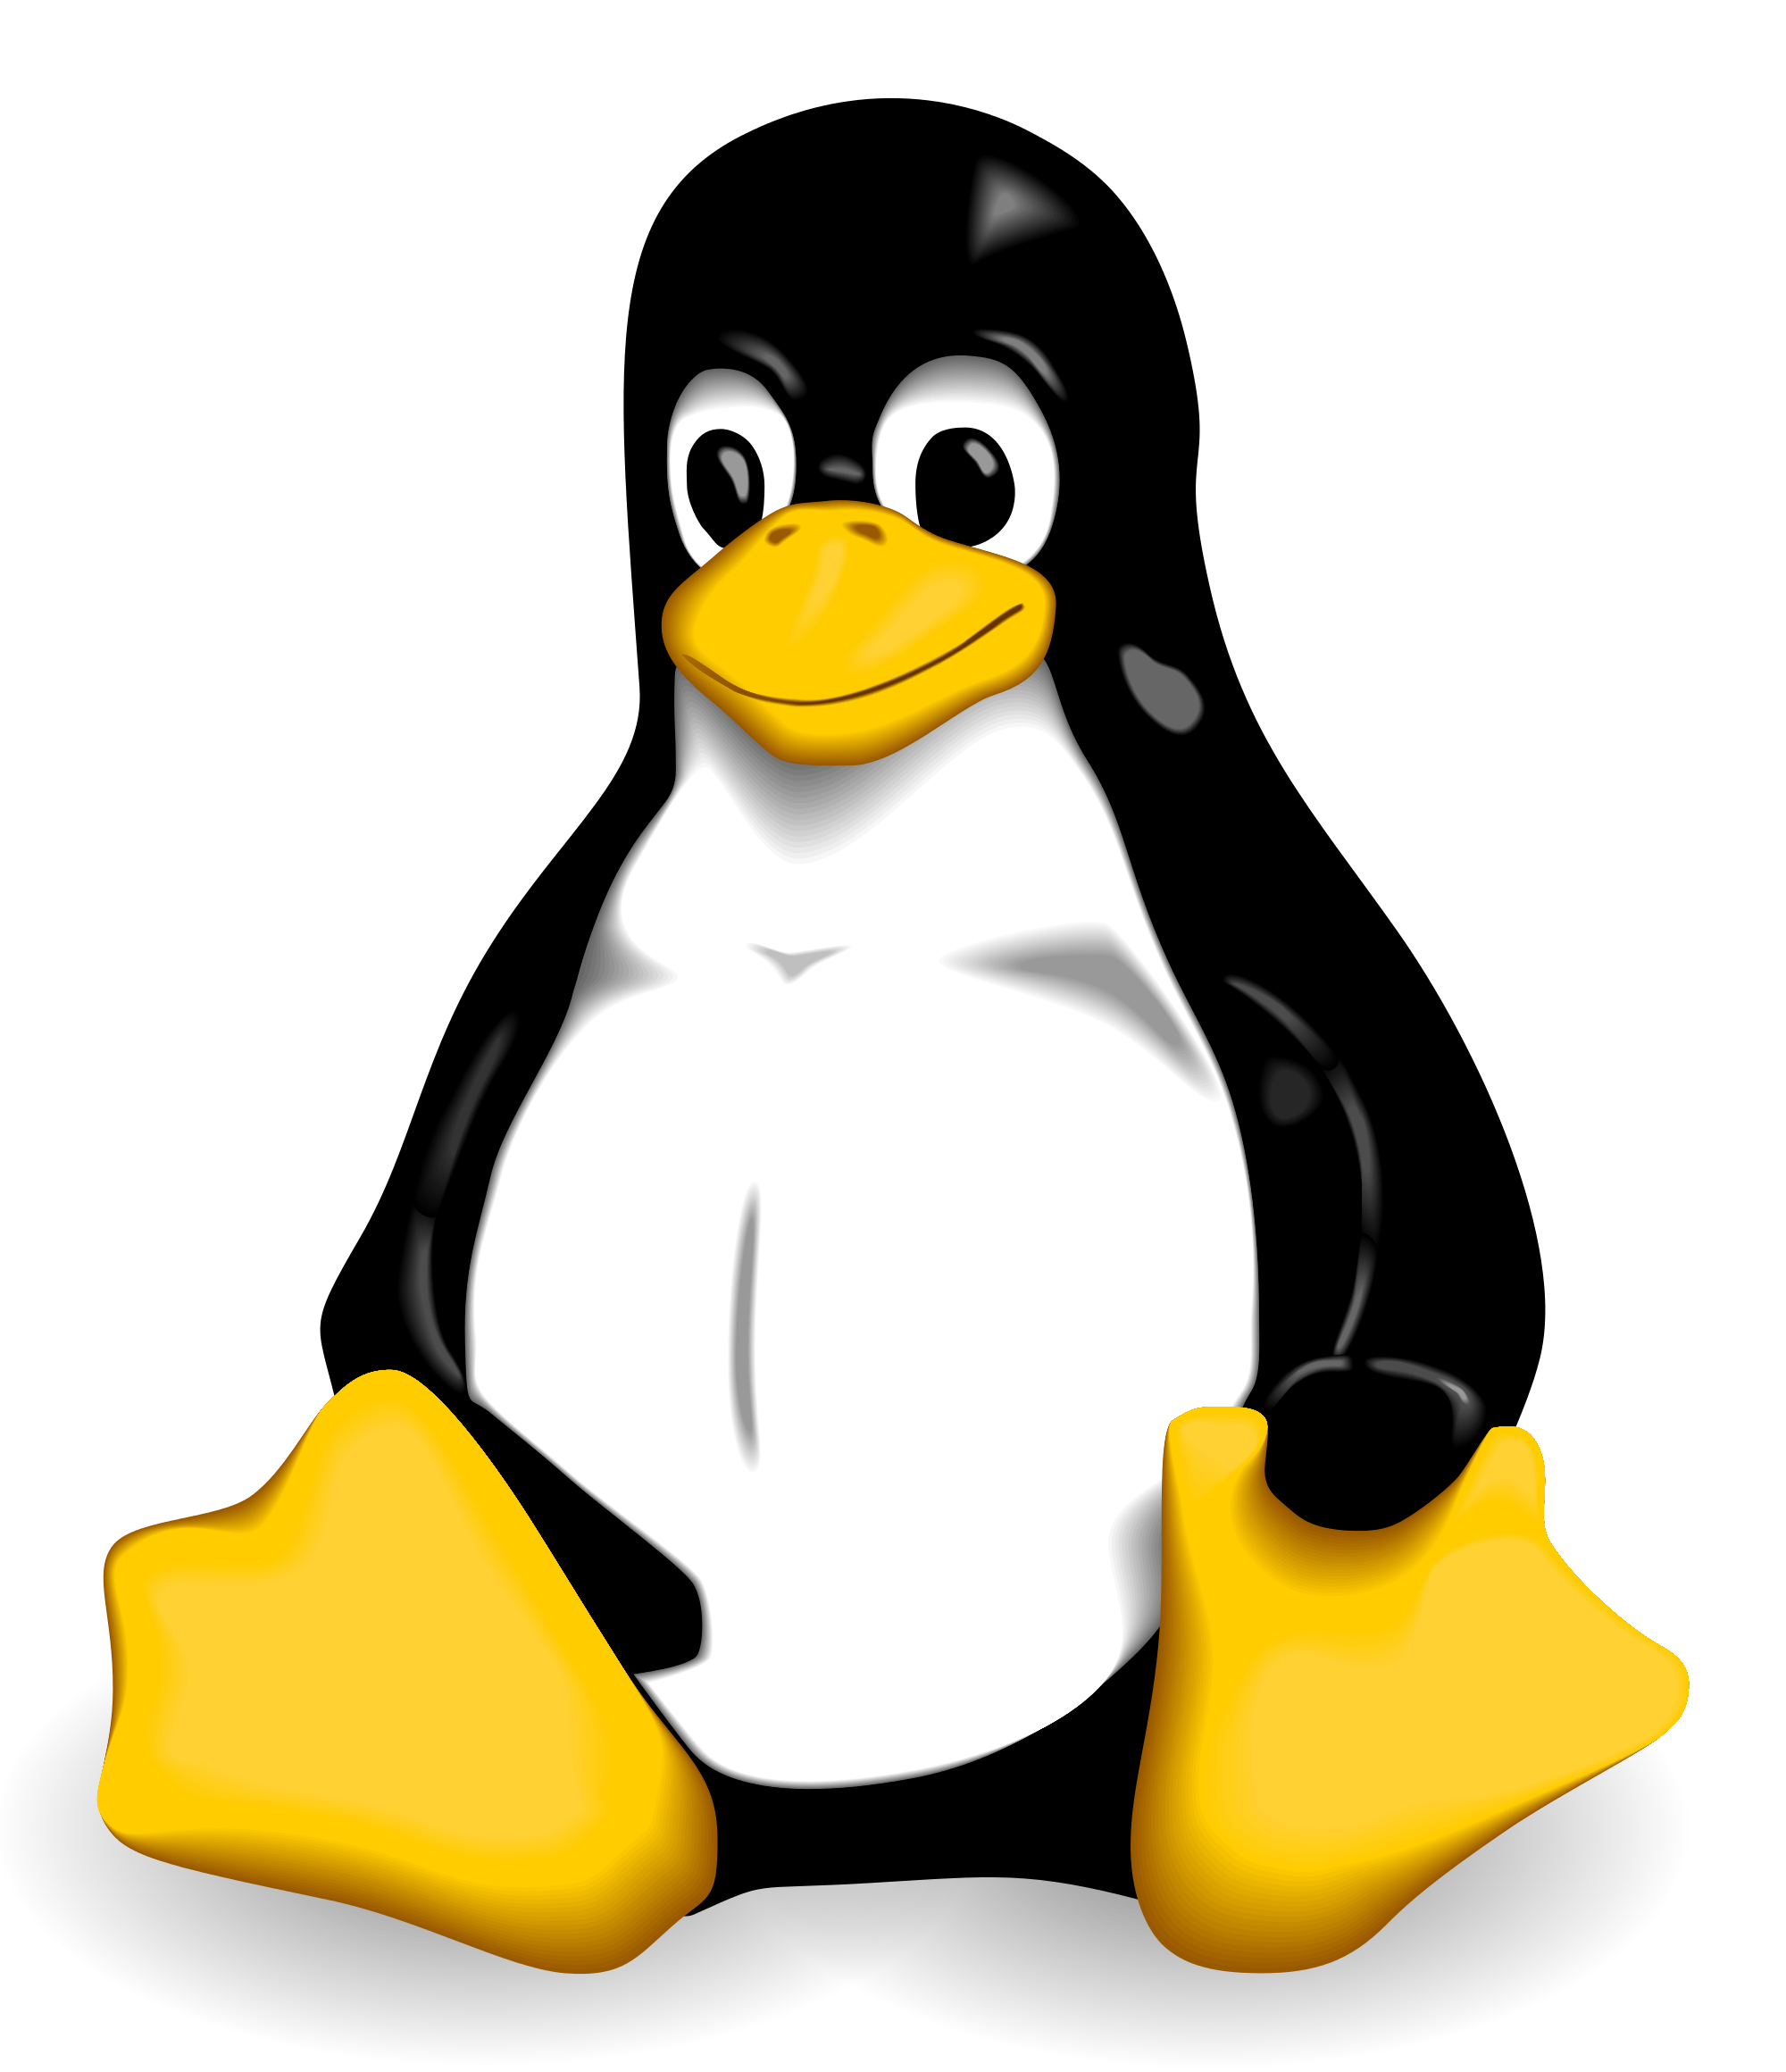 为什么有关linux的话题常常使用小企鹅的图标